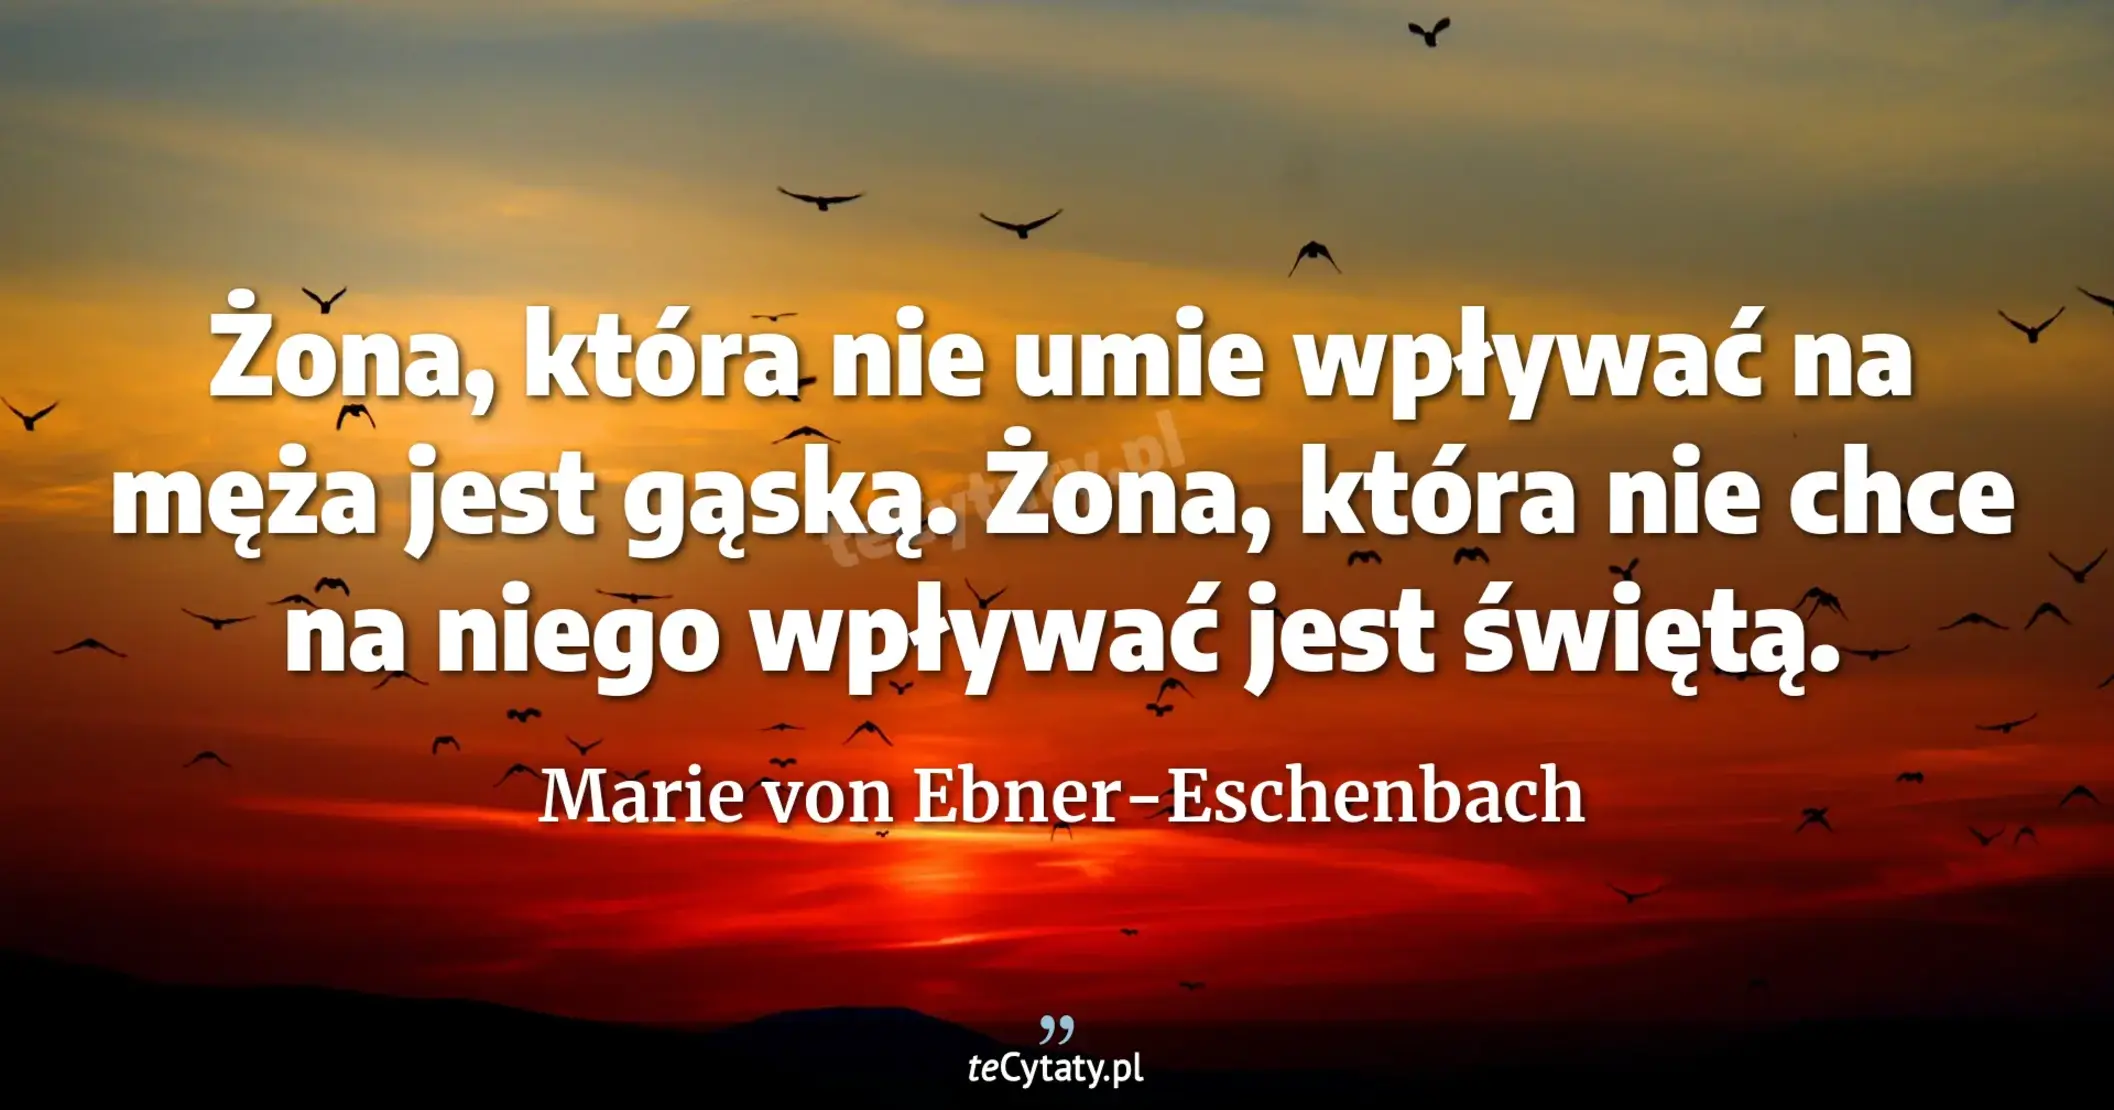 Żona, która nie umie wpływać na męża jest gąską. Żona, która nie chce na niego wpływać jest świętą. - Marie von Ebner-Eschenbach